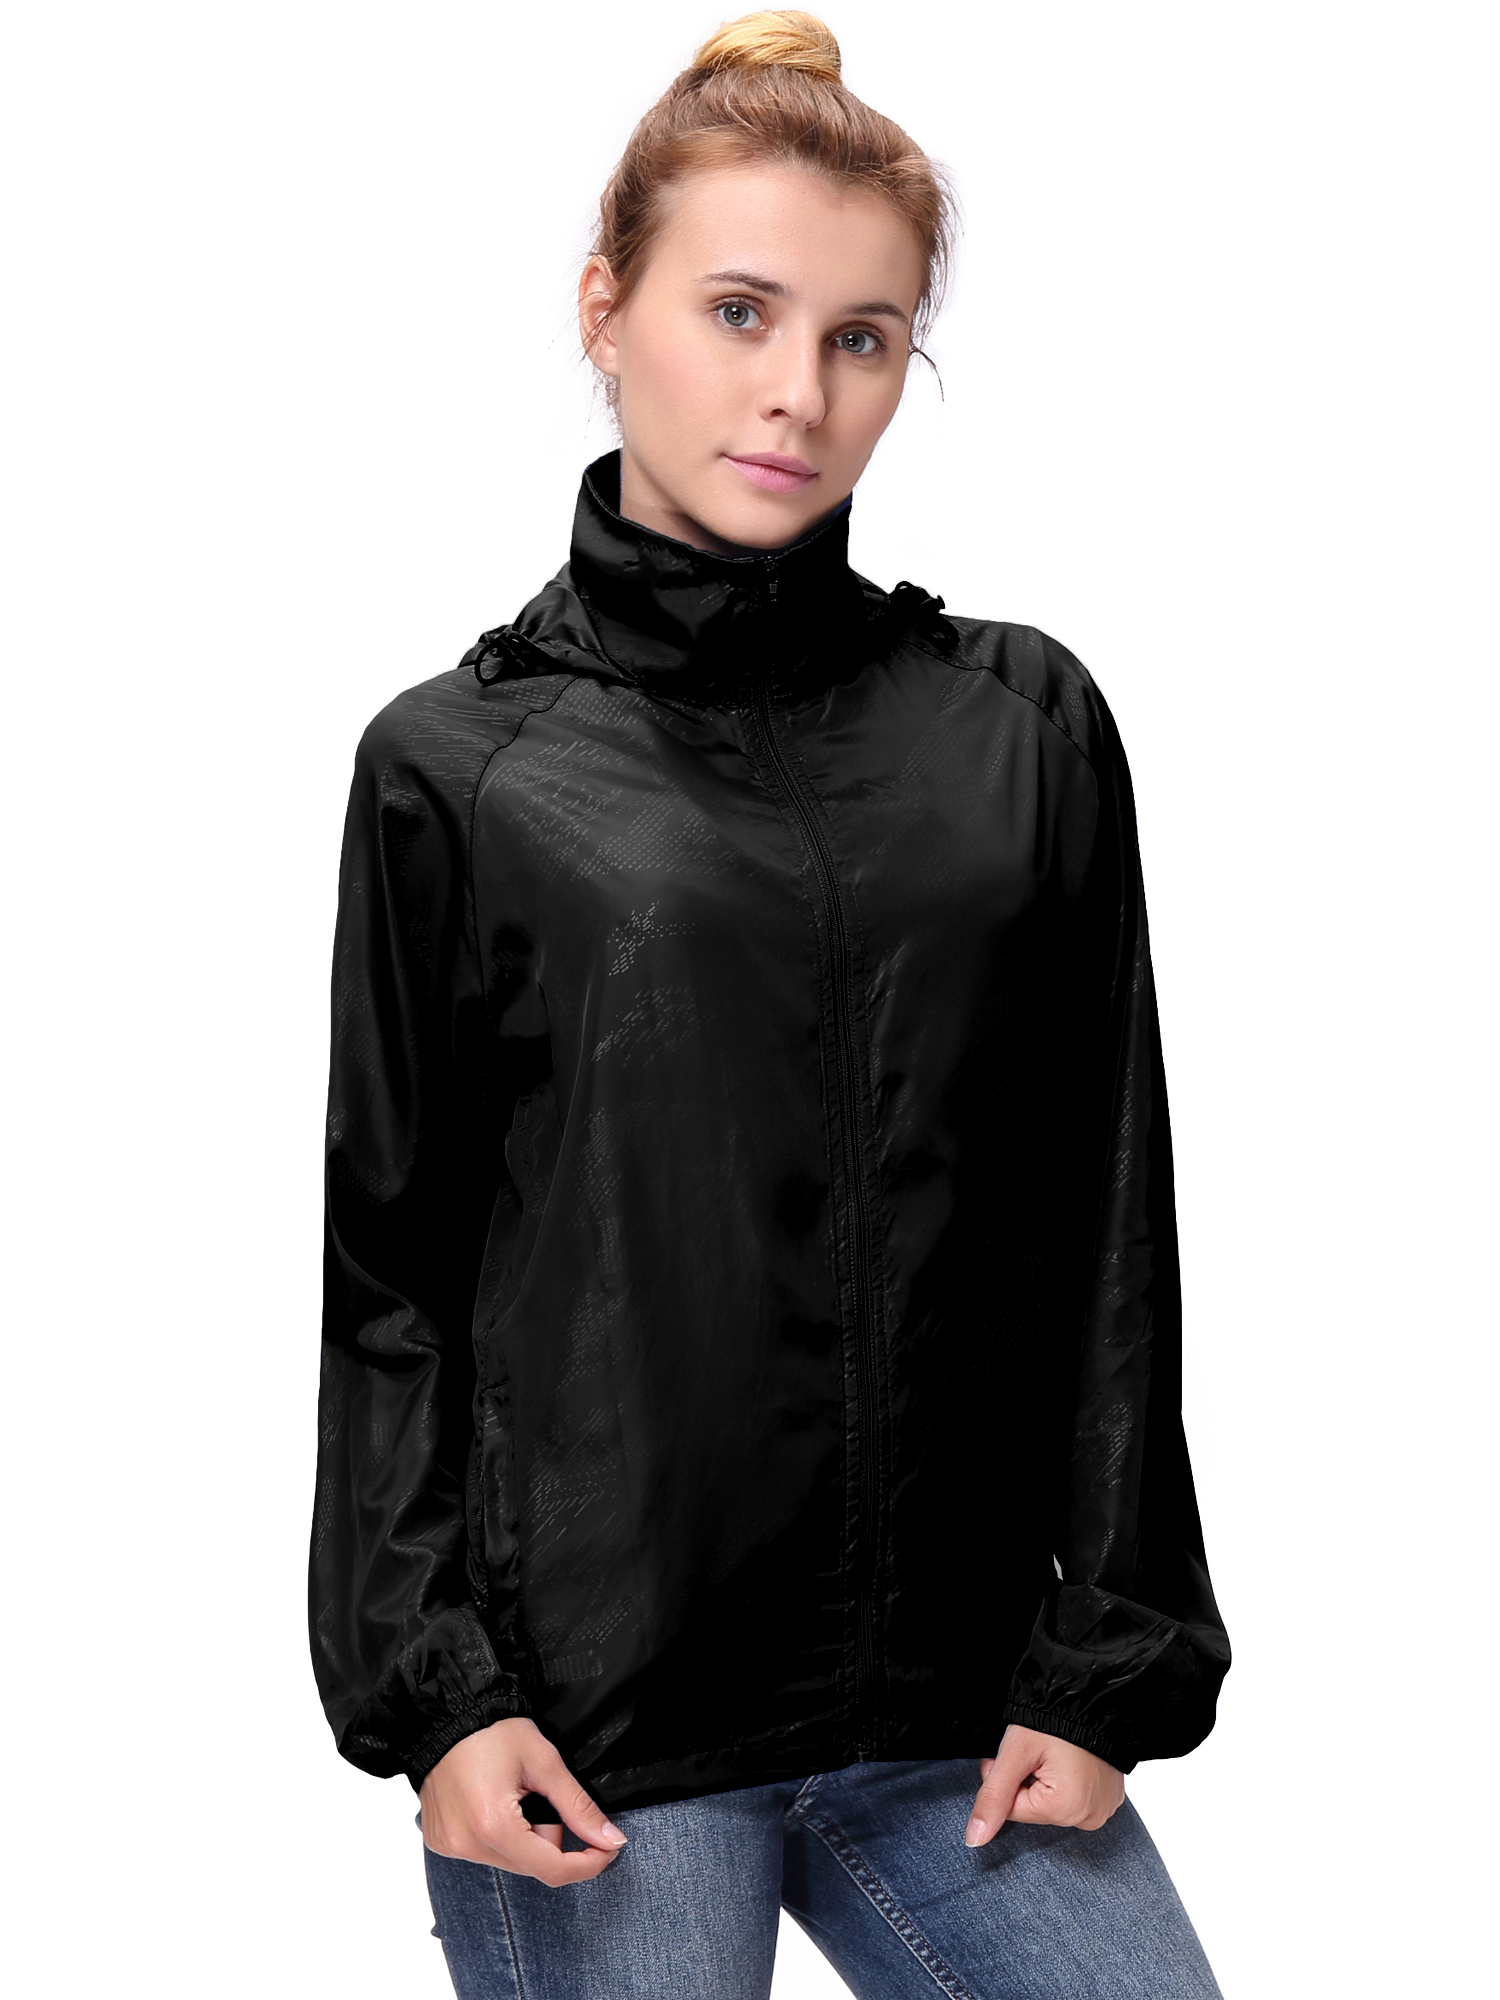 Fashion Womens/Mens Outdoor Lightweight windbreaker Jackets Waterproof Rain Coat Outwear Zip-Up Long Sleeve Hoodie Sport Windbreaker - image 5 of 9